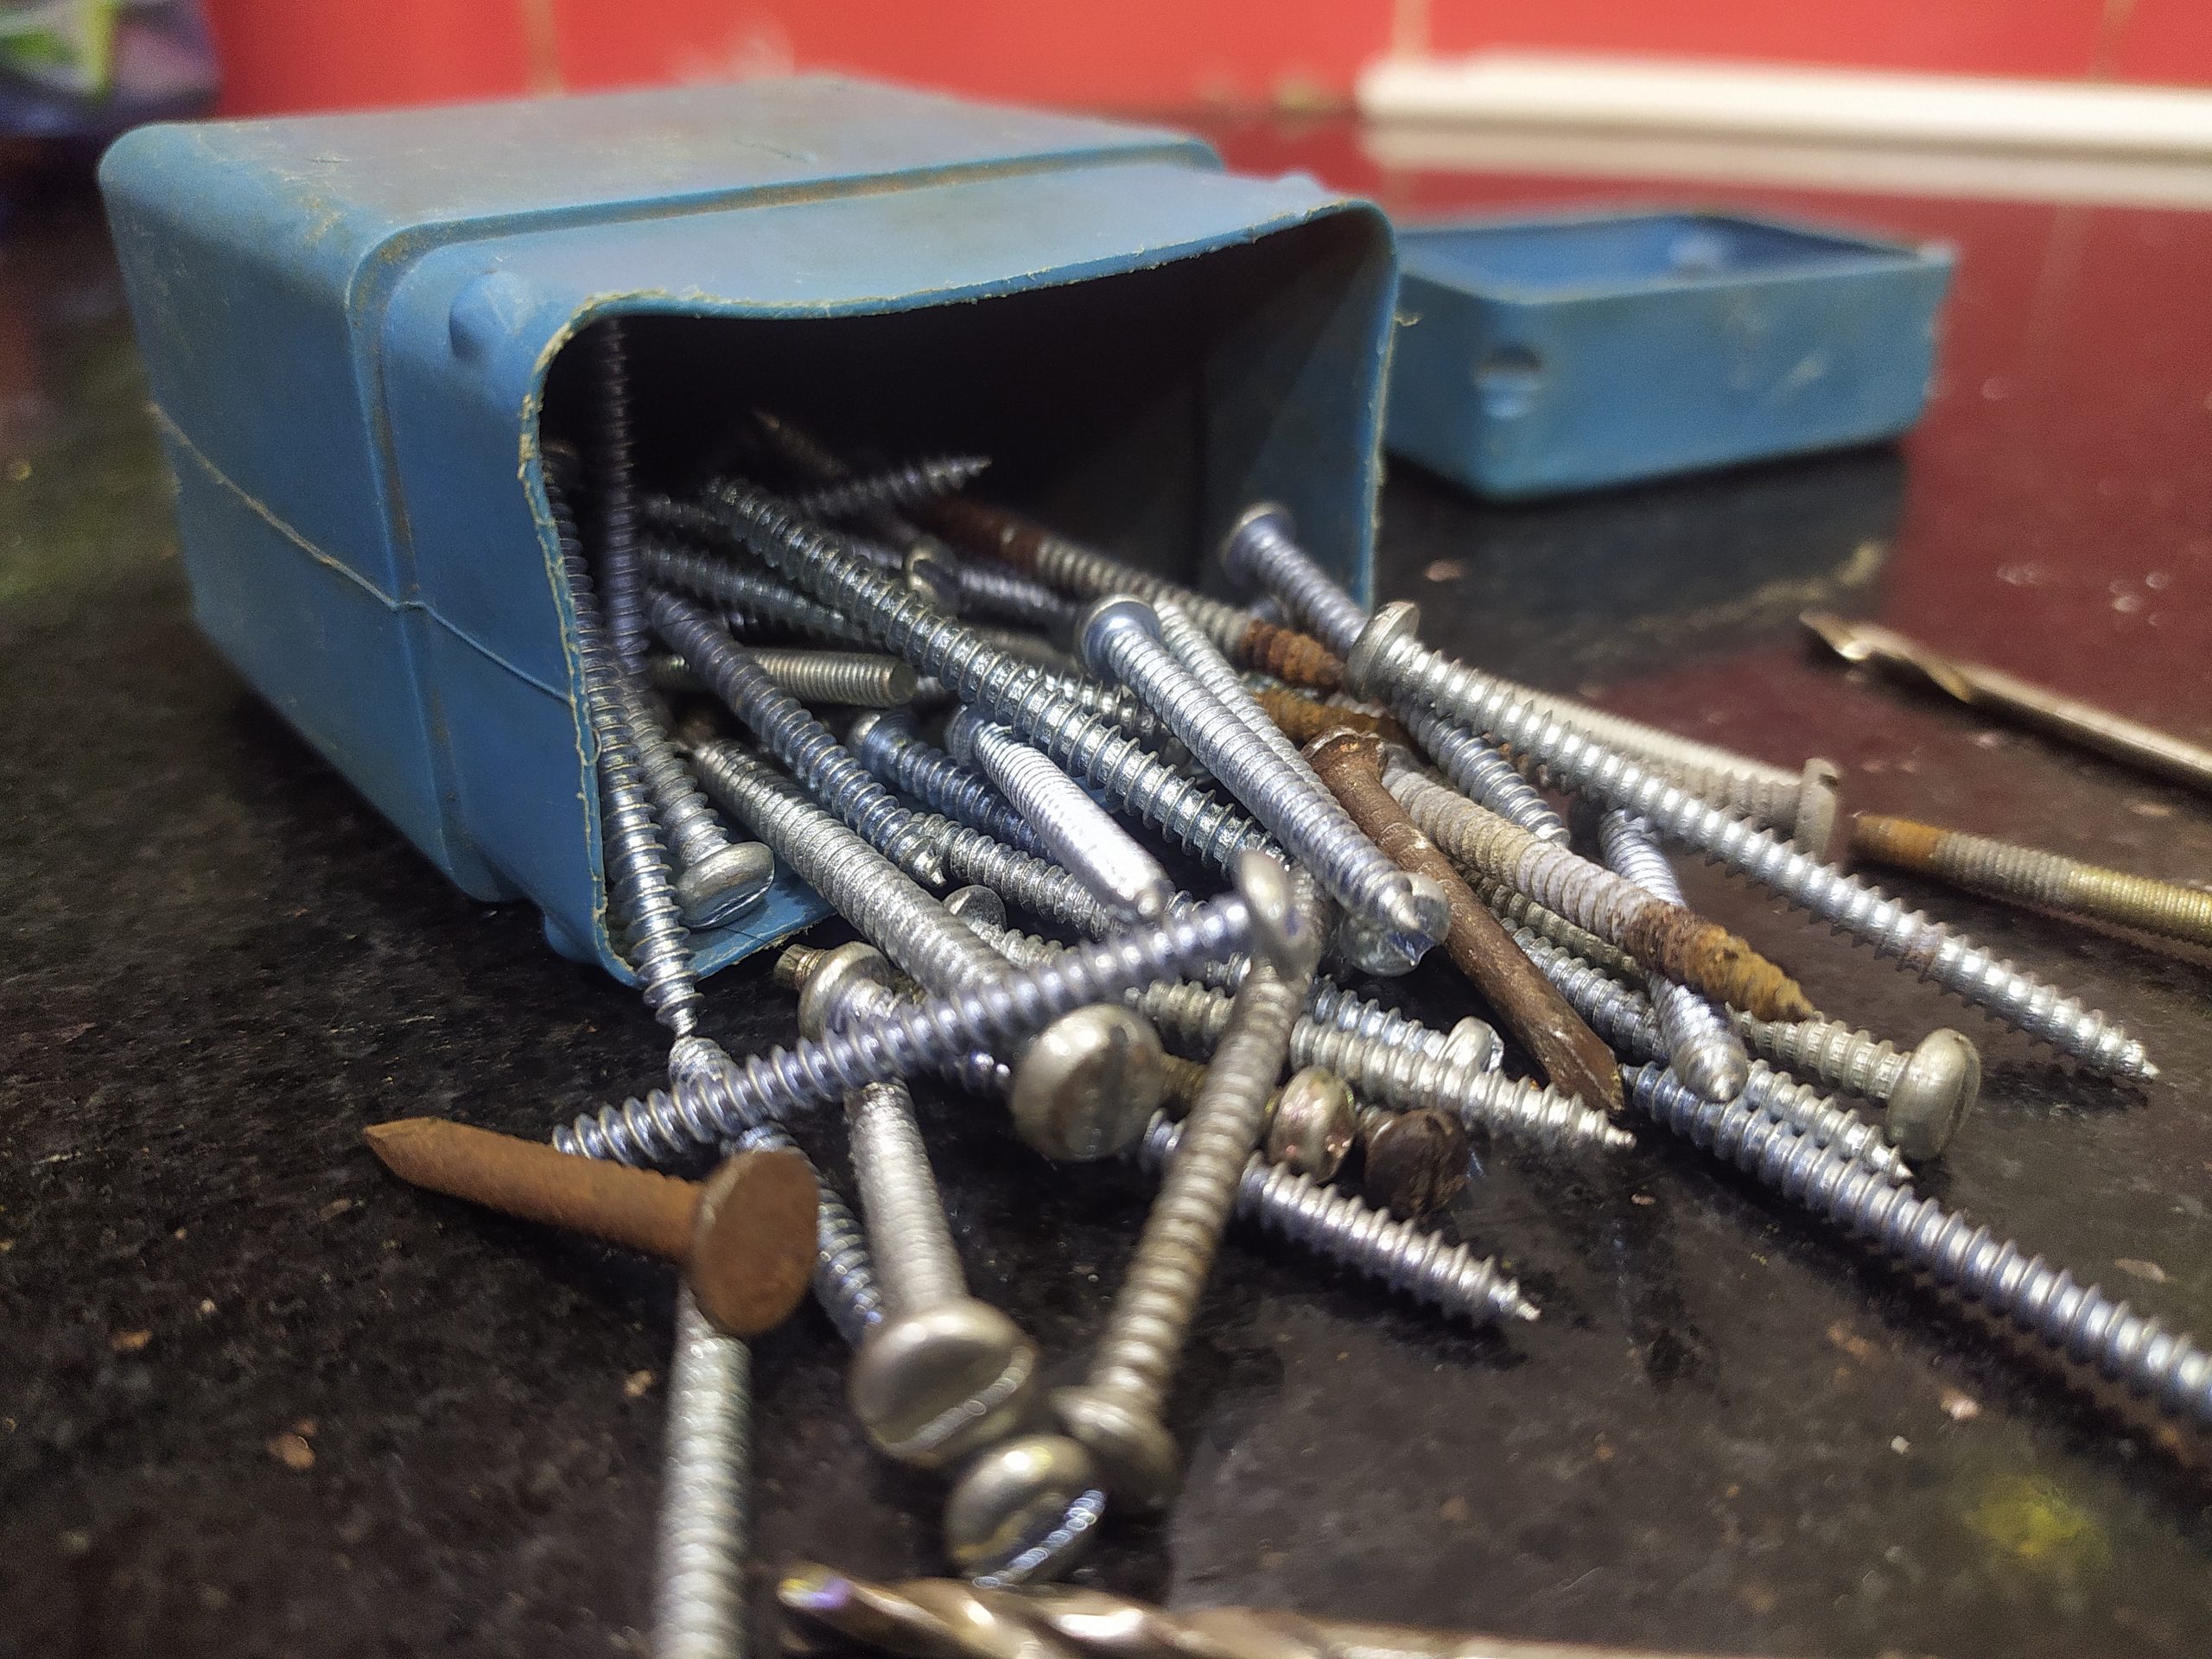 screws in a box